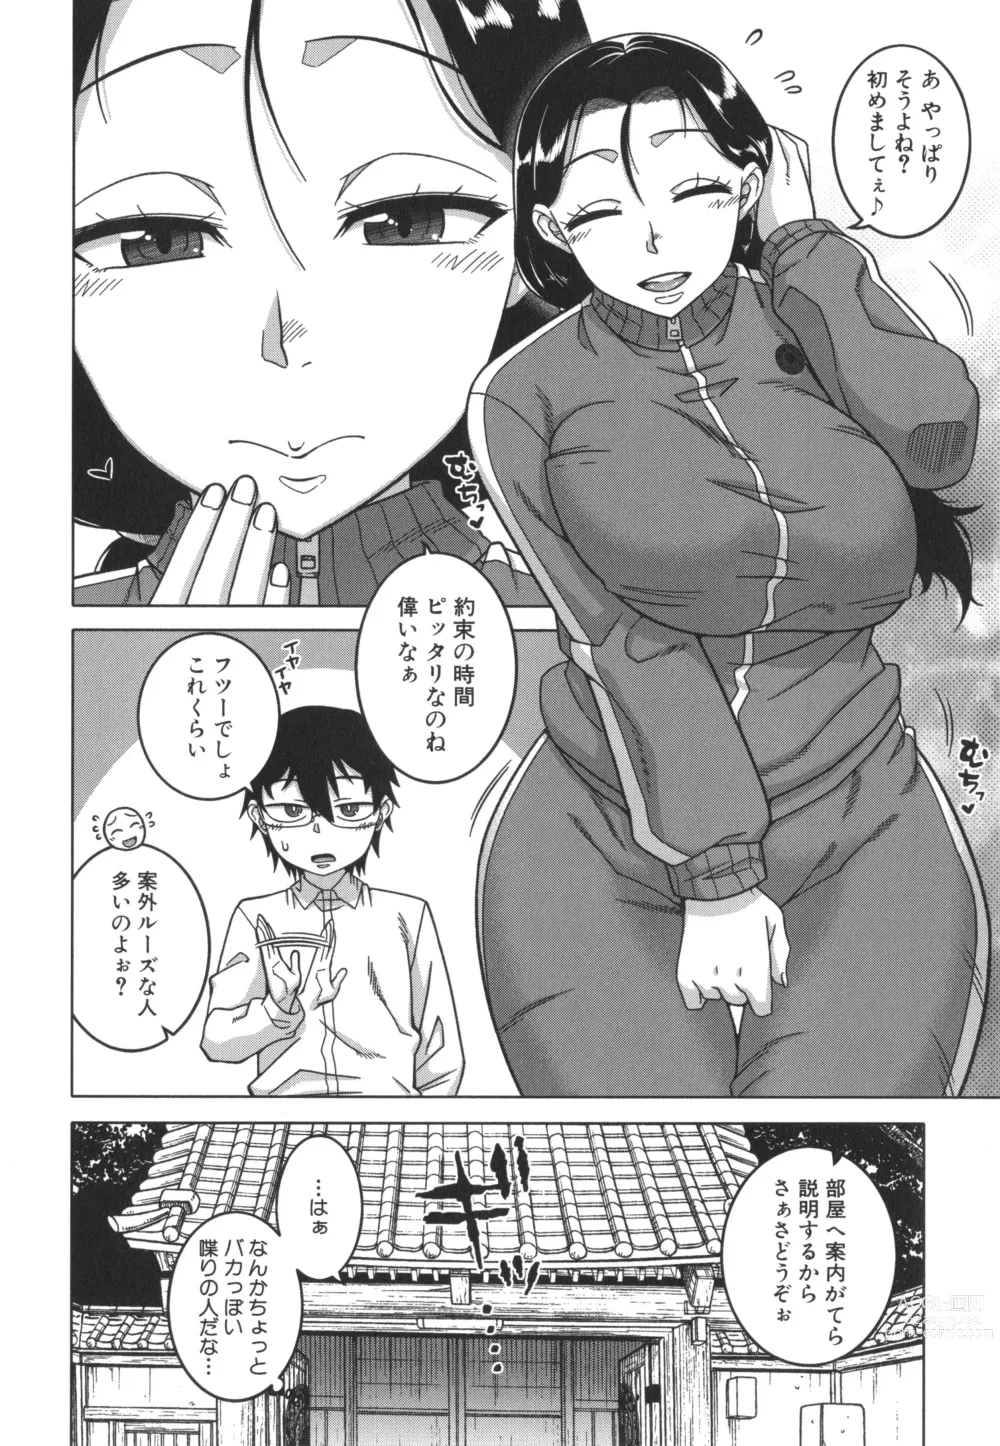 Page 11 of manga Kami-sama no Tsukurikata